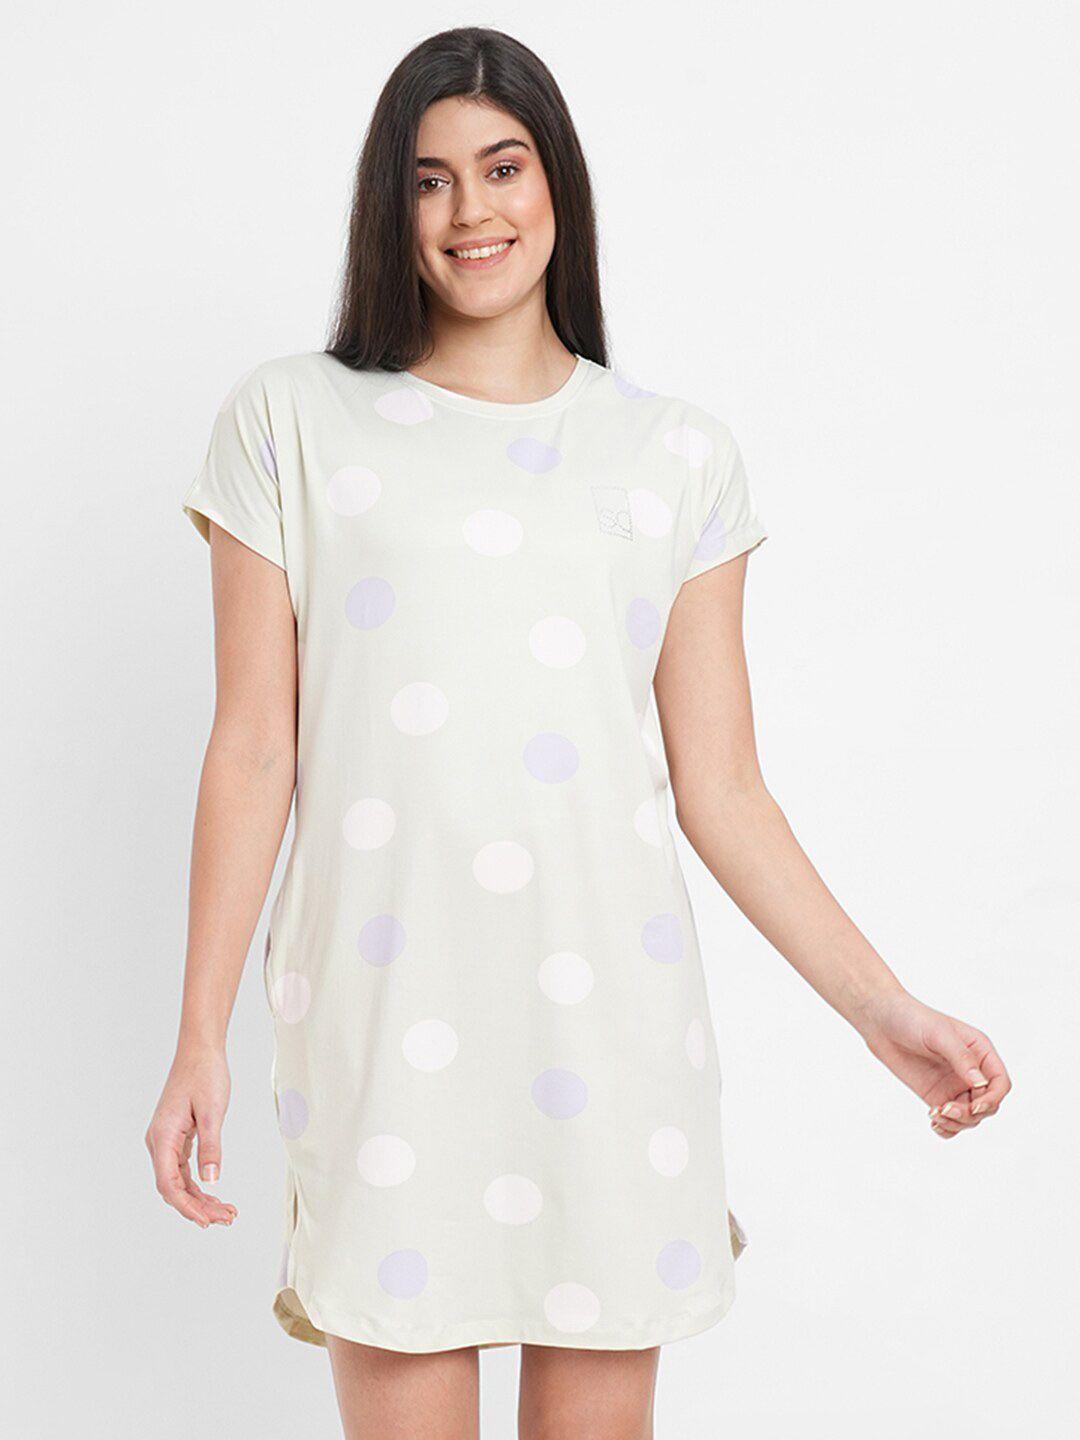 sweet dreams polka dots printed nightdress